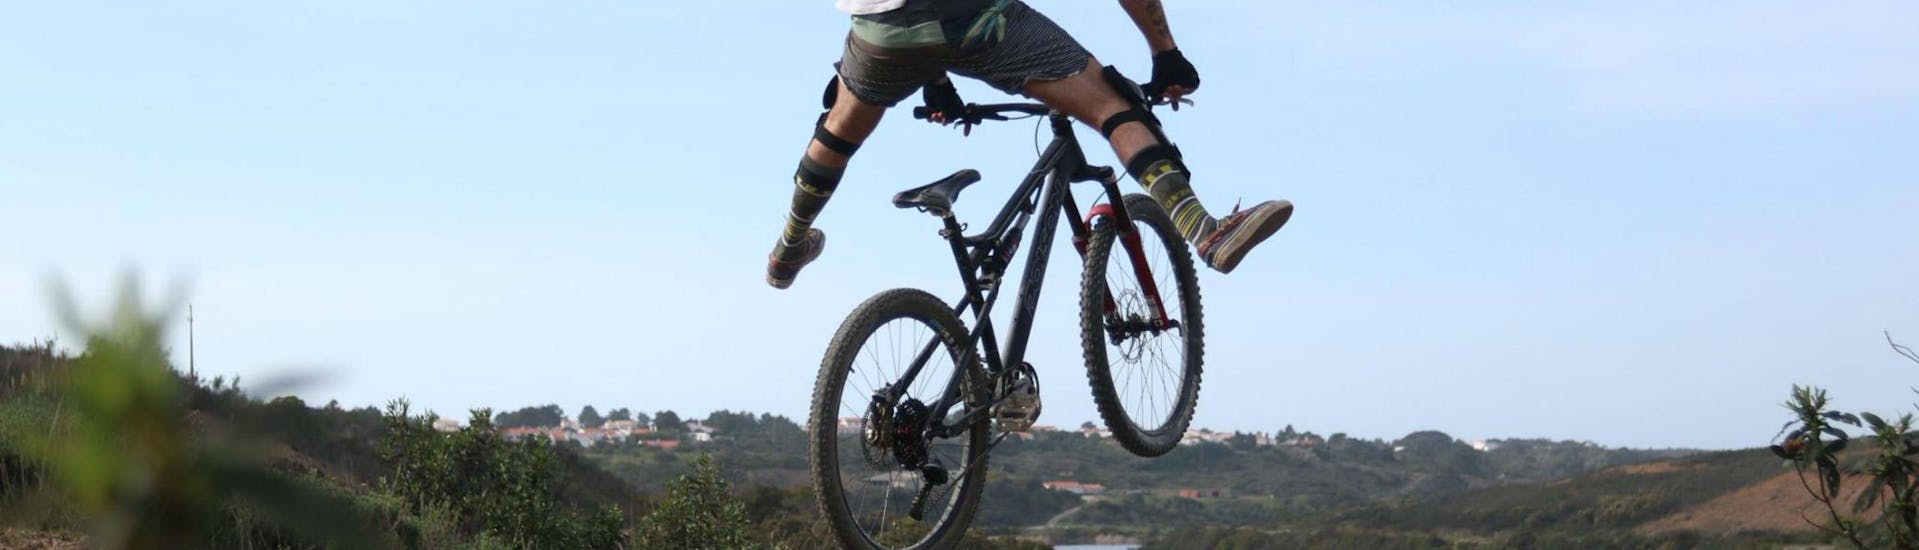 Tour en bicicleta de montaña - Costa Vicentina.